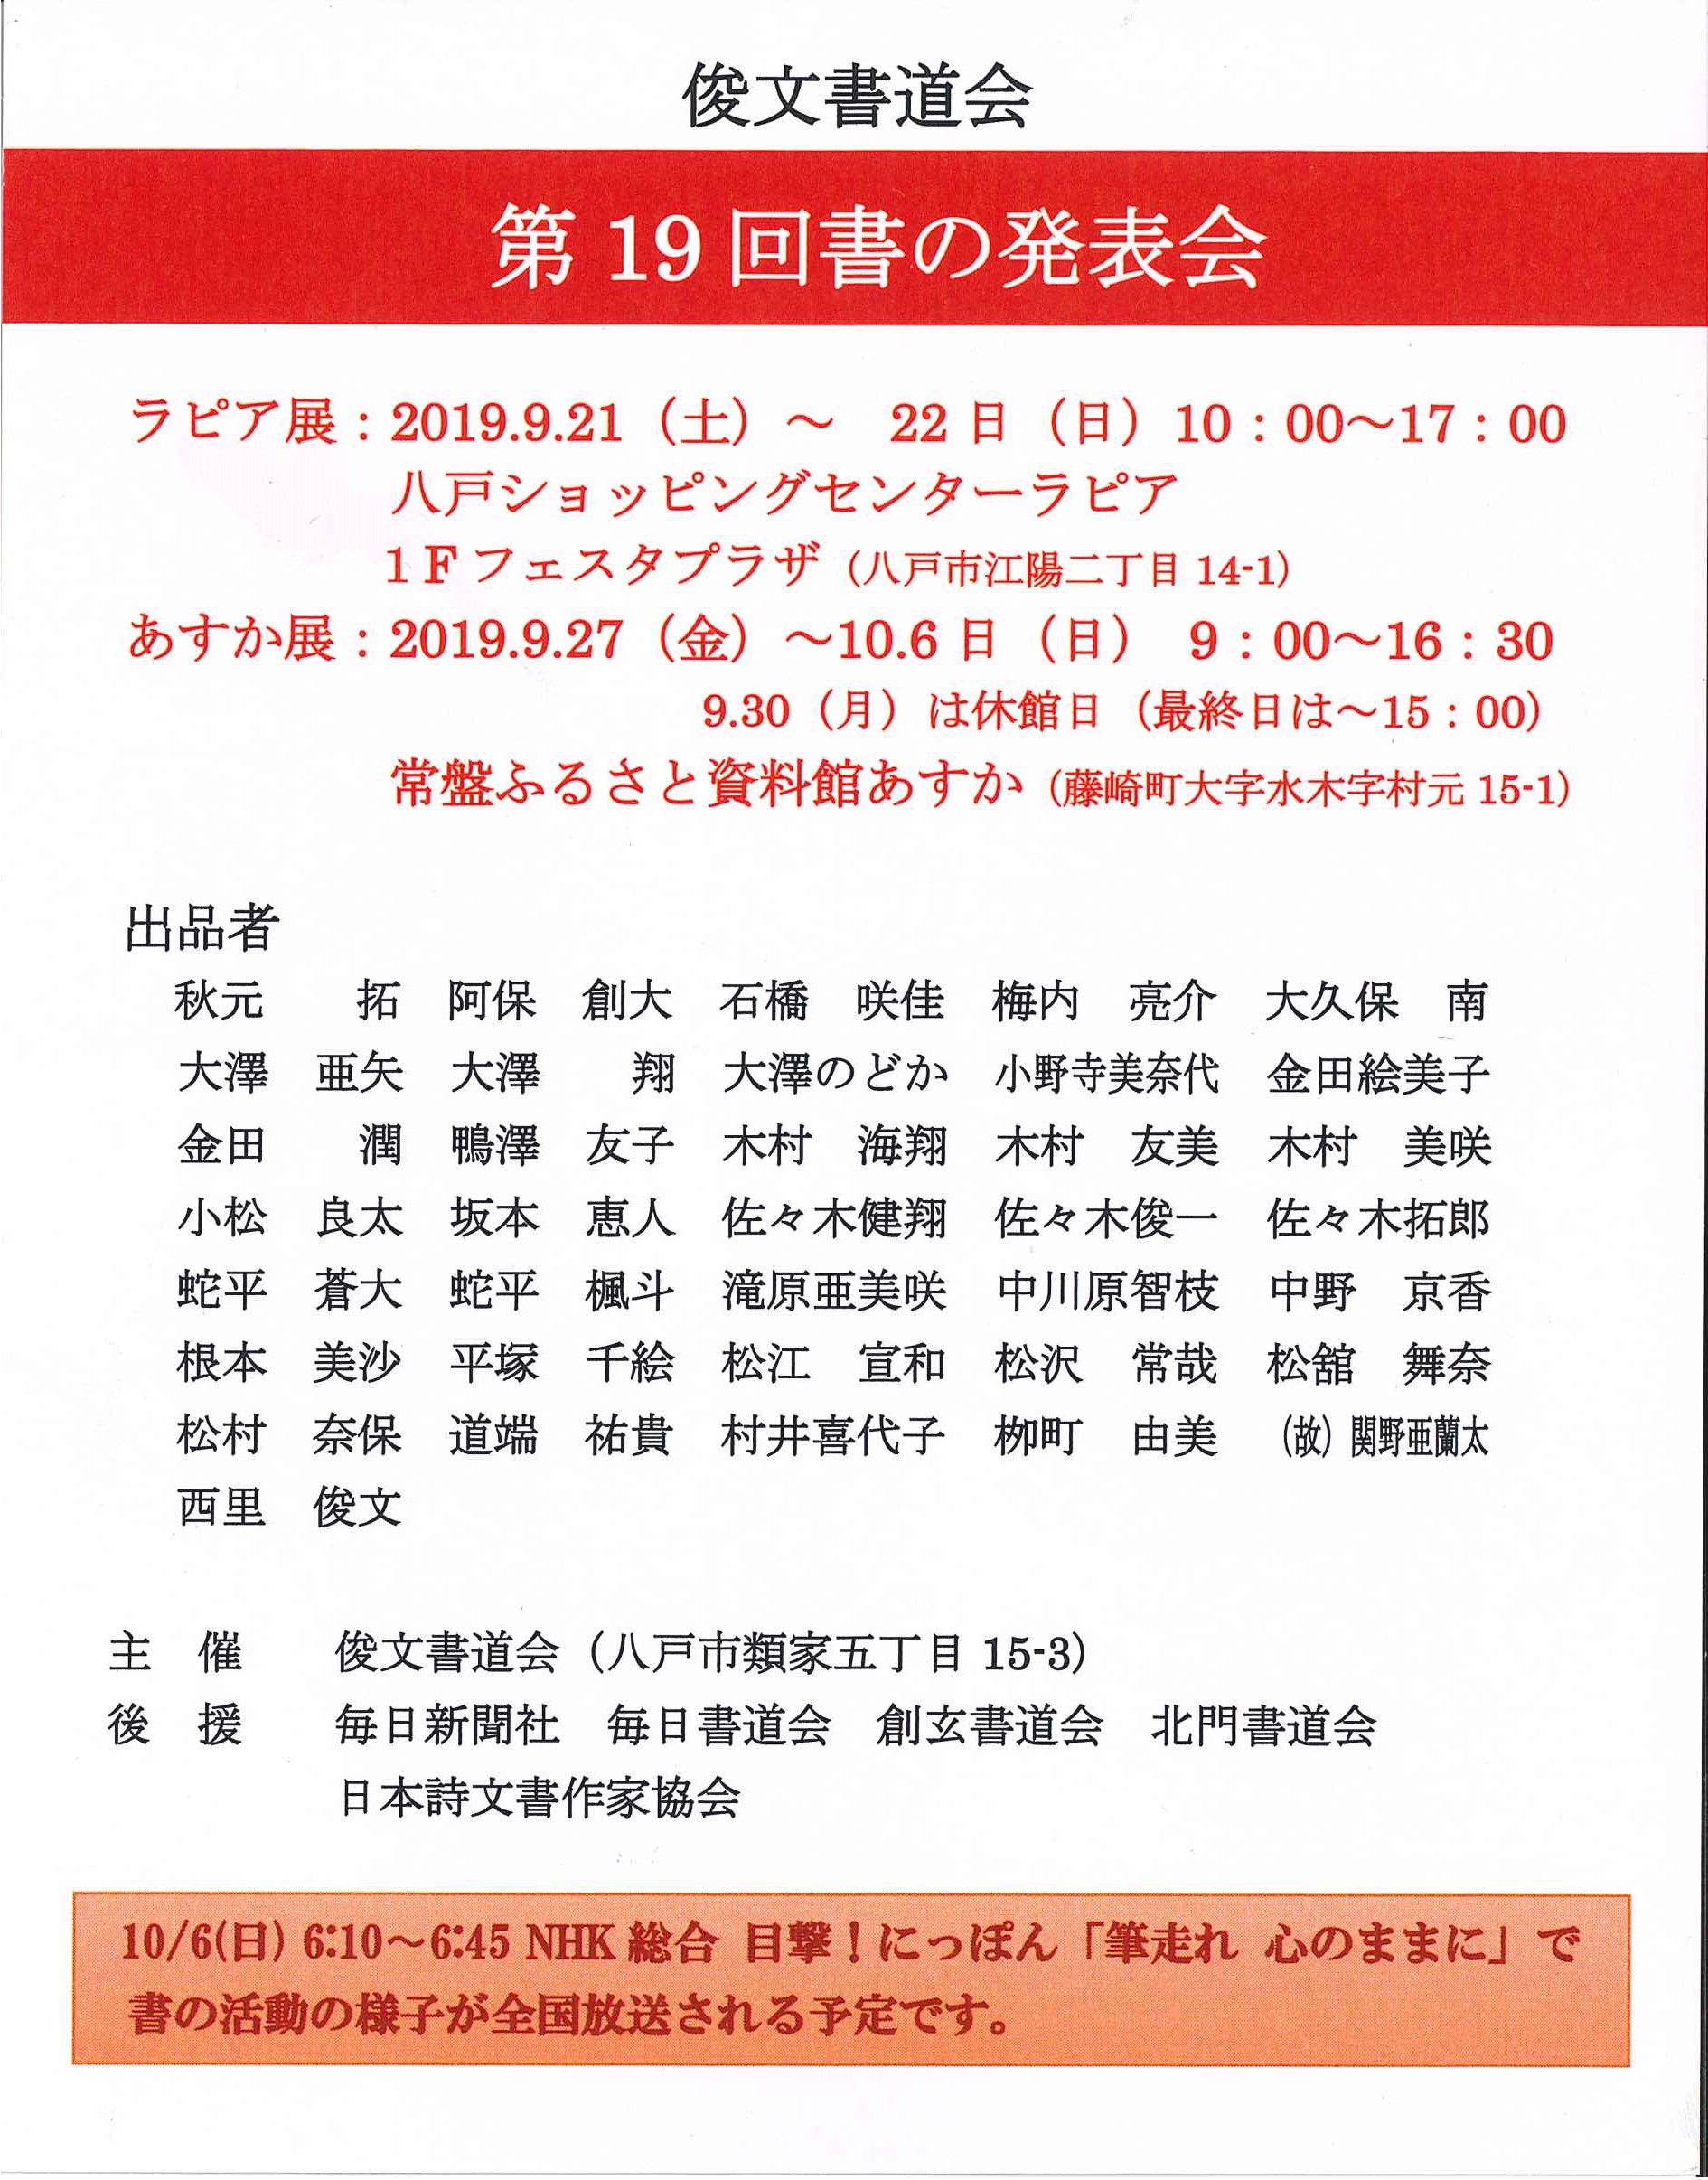 http://www.sogen.or.jp/letter/2019/08/13/20190813104259800_0001.jpg